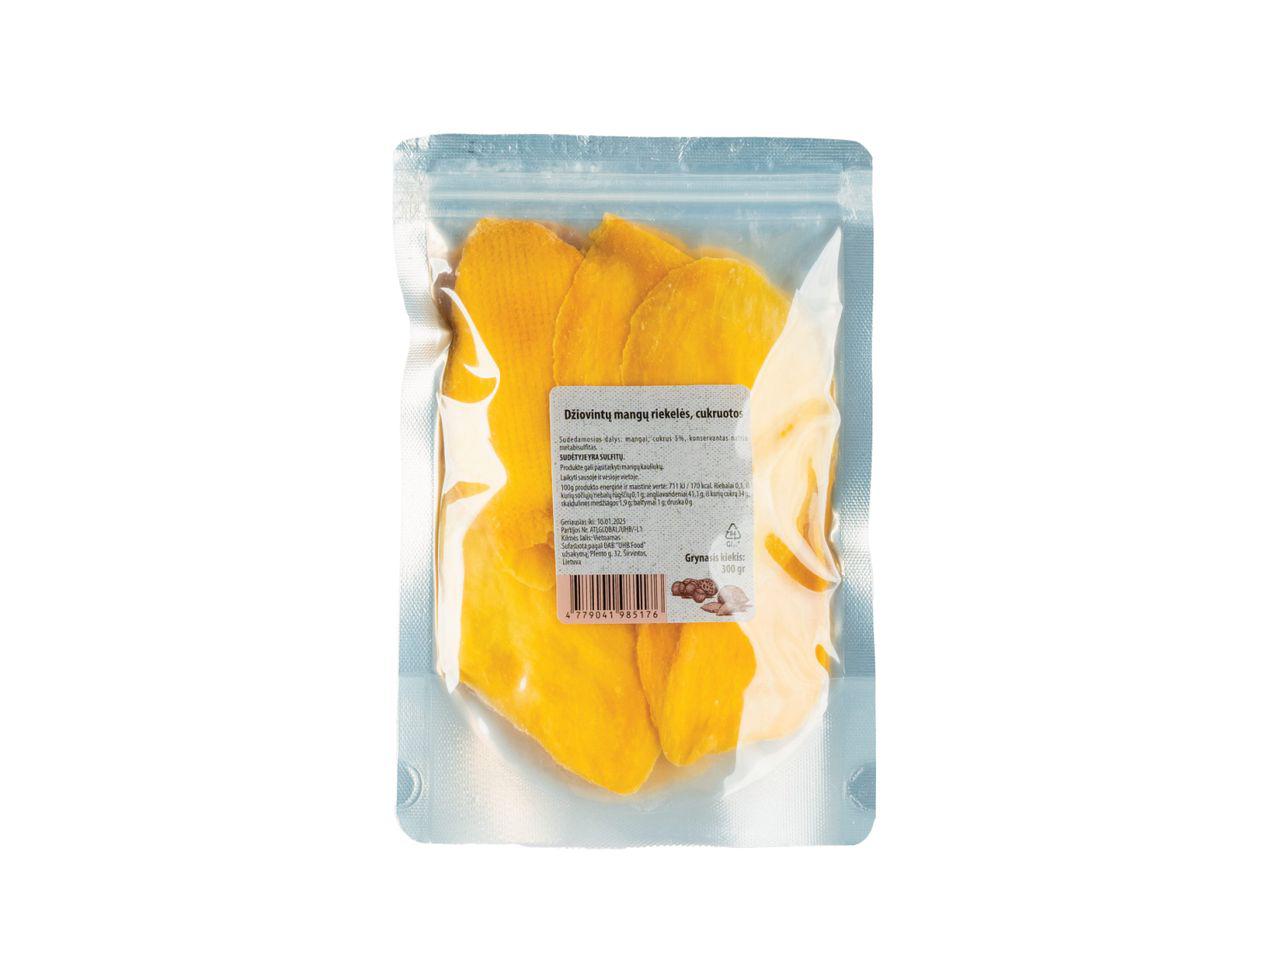 Cukruotos džiovintų mangų riekelės